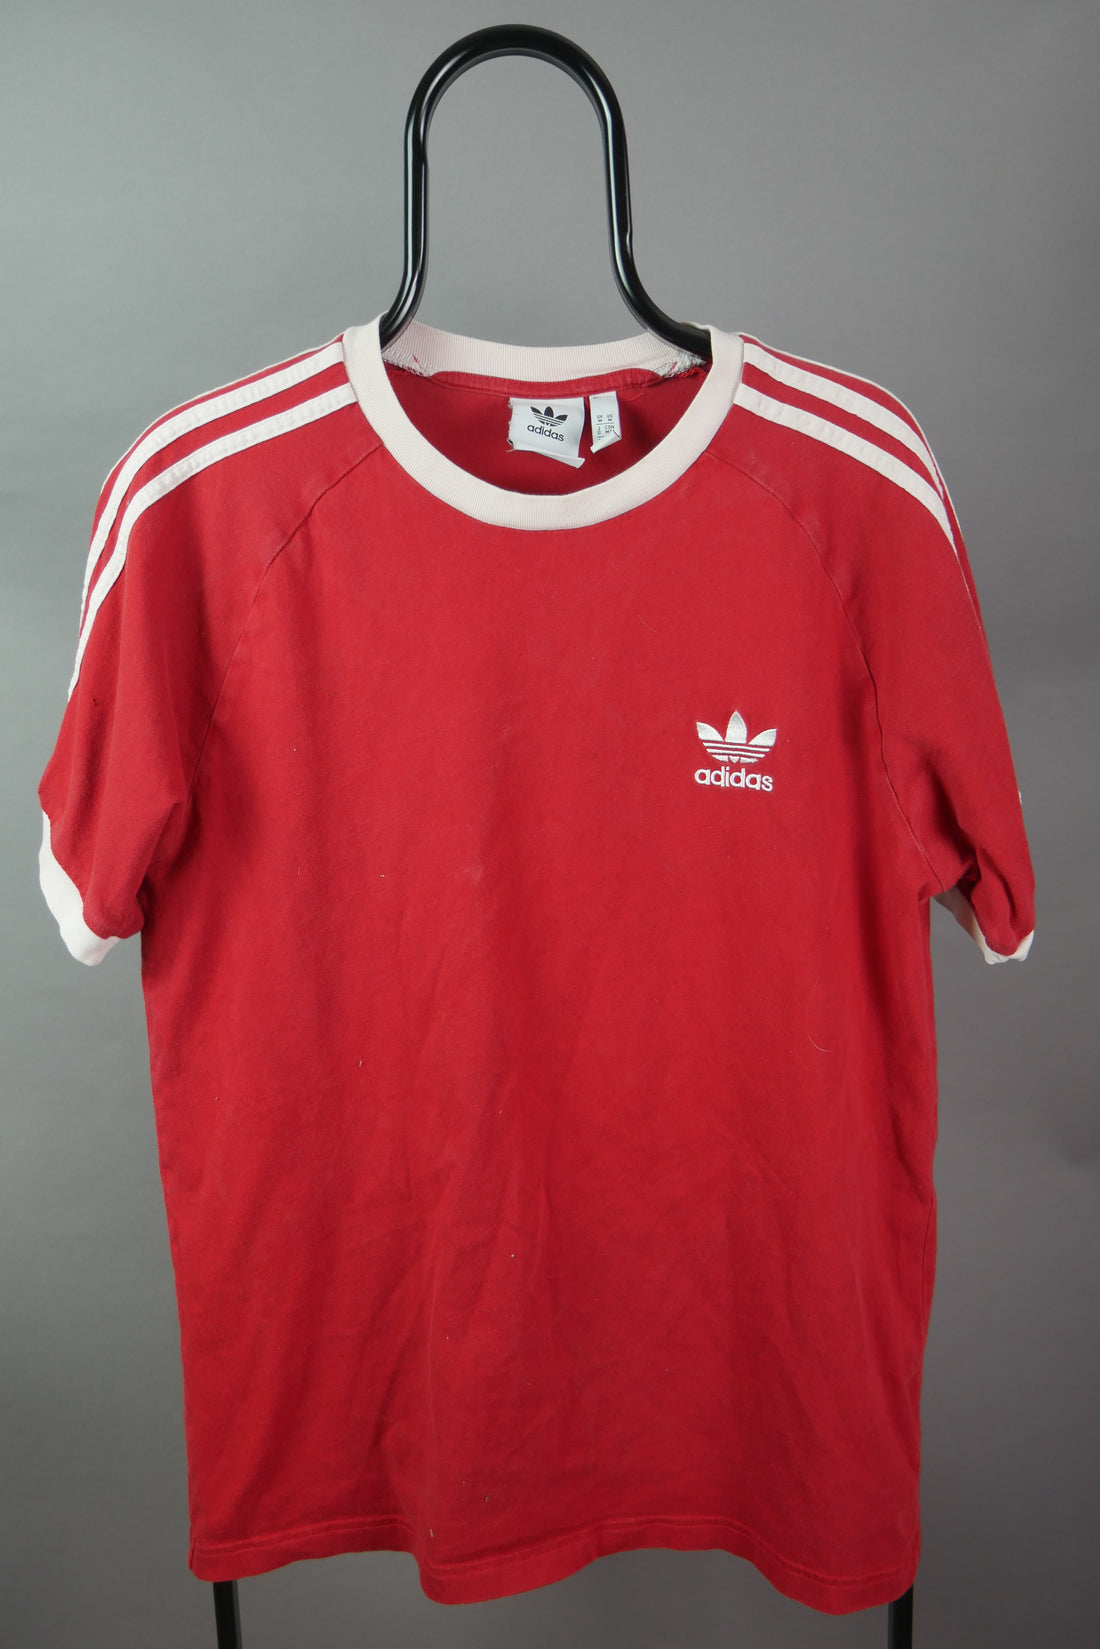 The Adidas Original T-Shirt (M)